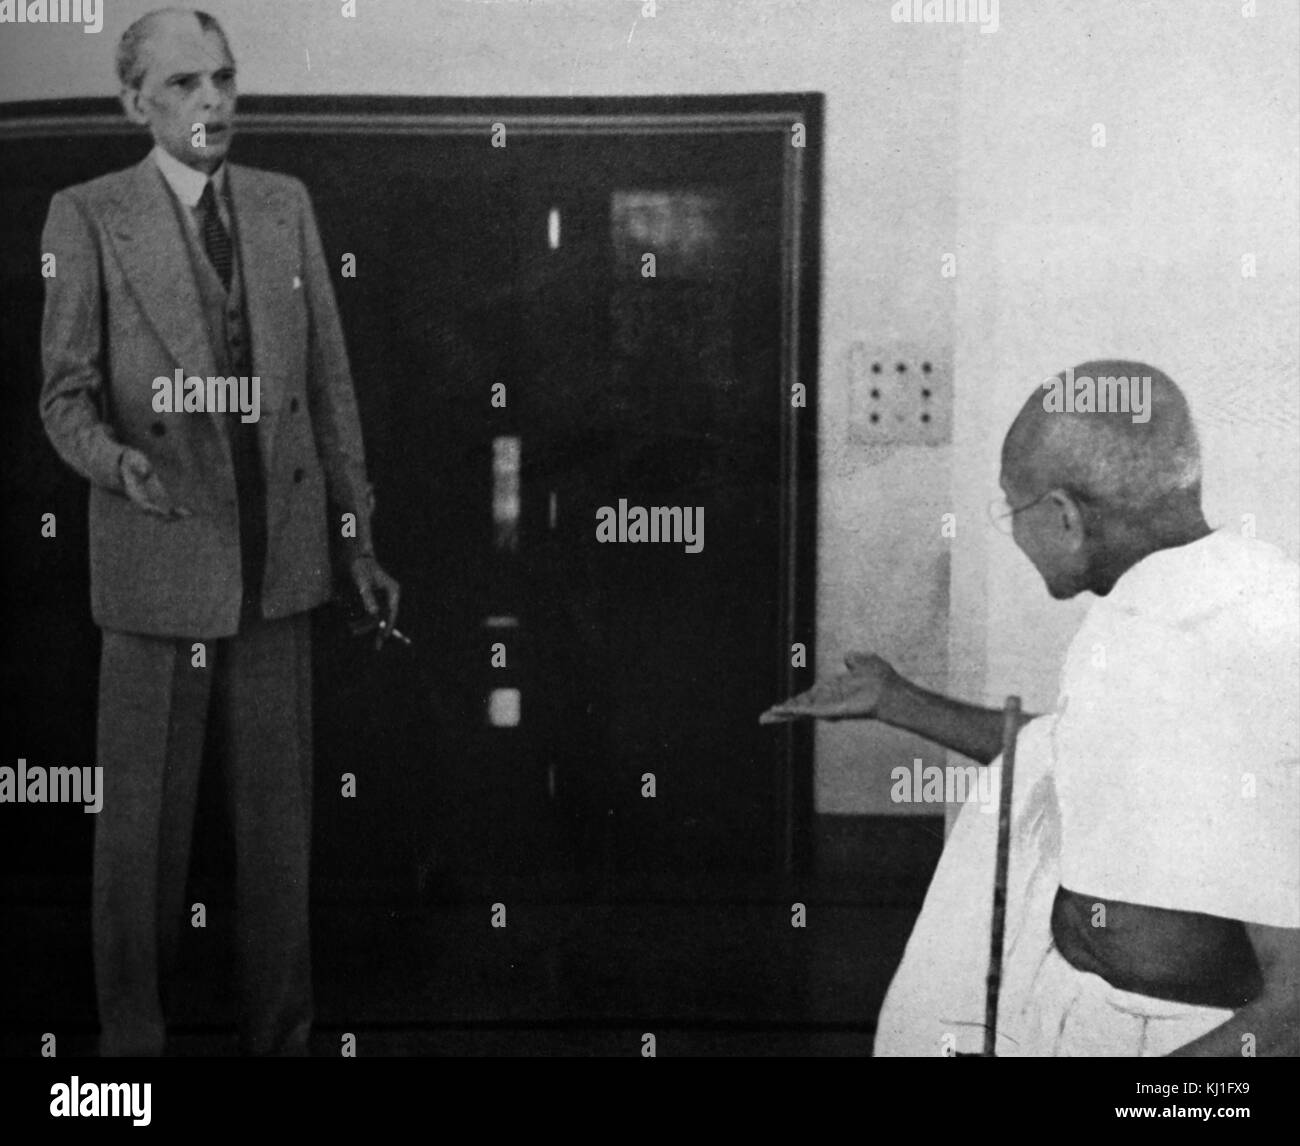 Mohandas Karamchand Gandhi (1869 - 1948) et Mohammed Ali Jinnah, au cours de leurs entretiens avec le vice-roi, novembre 1939. Jinnah devient le premier chef du Pakistan. Gandhi a été le principal chef de l'indépendance de l'Inde en mouvement a décidé de l'Inde. Banque D'Images